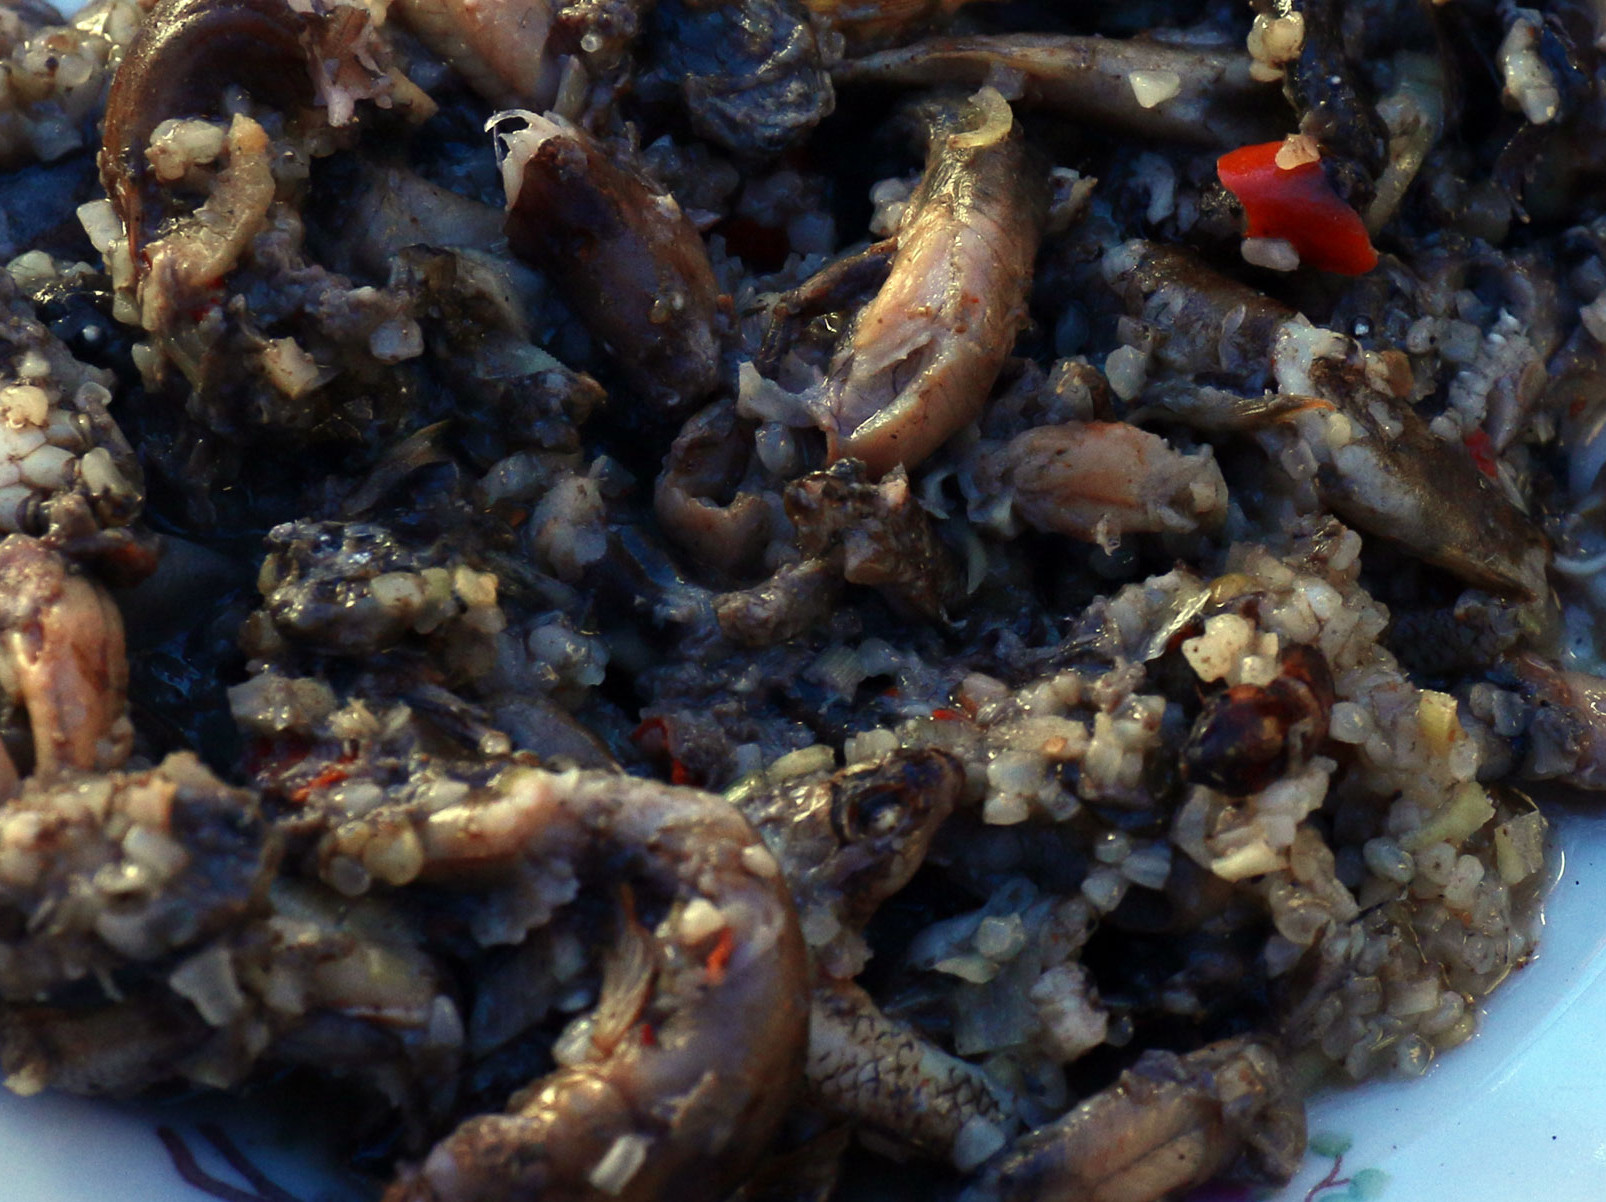 Món ăn từ lươn được người dân chế biến công phu bằng cách trộn lẫn với gạo nếp và các loại gia vị sau đó gói lại và hông. Đây chính là món moọc nổi tiếng ở vùng cao Nghệ An. Ảnh Đào Thọ